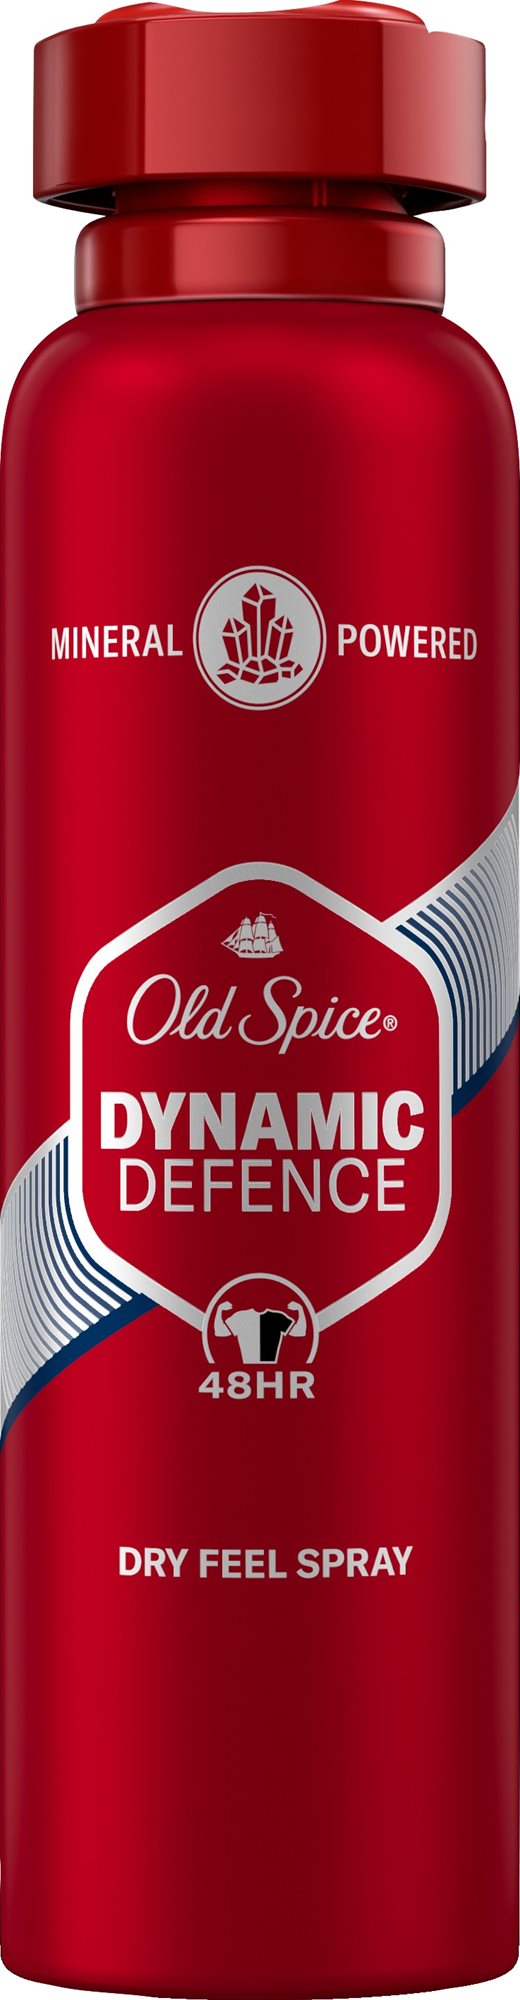 Dezodor OLD SPICE Premium Dynamic Defense Száraz érzetet nyújtó dezodor 200 ml